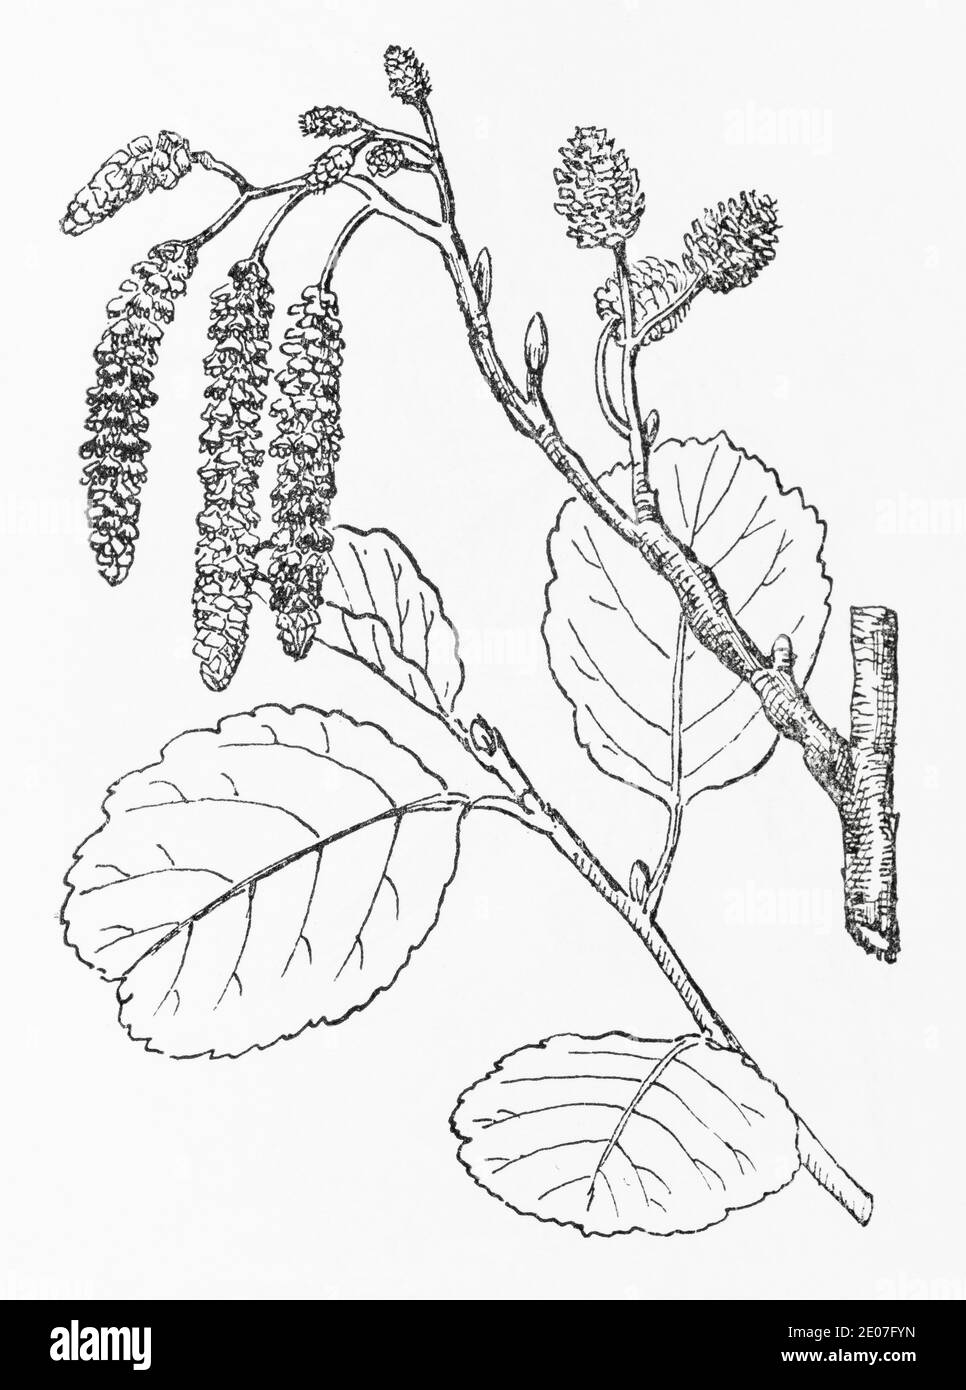 Alte botanische Illustration Gravur von Alder / Alnus glutinosa. Traditionelle Heilkräuter Pflanze. Siehe Hinweise Stockfoto